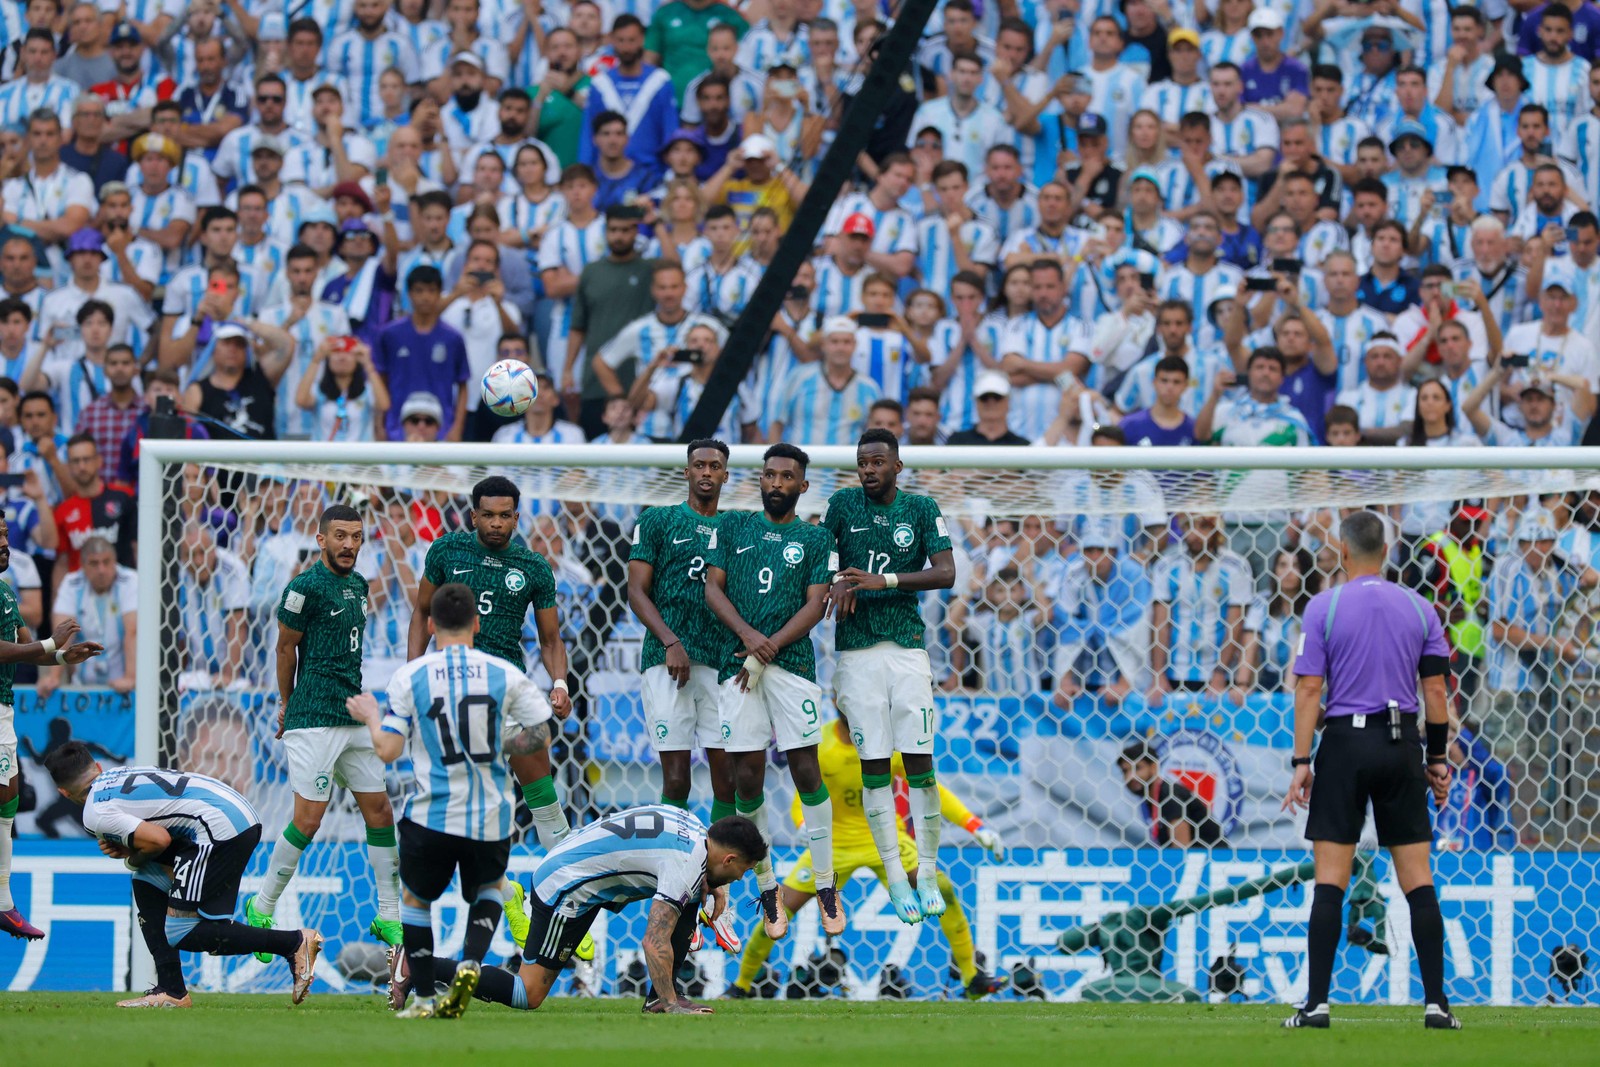 Cobrança de falta de Messi — Foto: Odd ANDERSEN / AFP